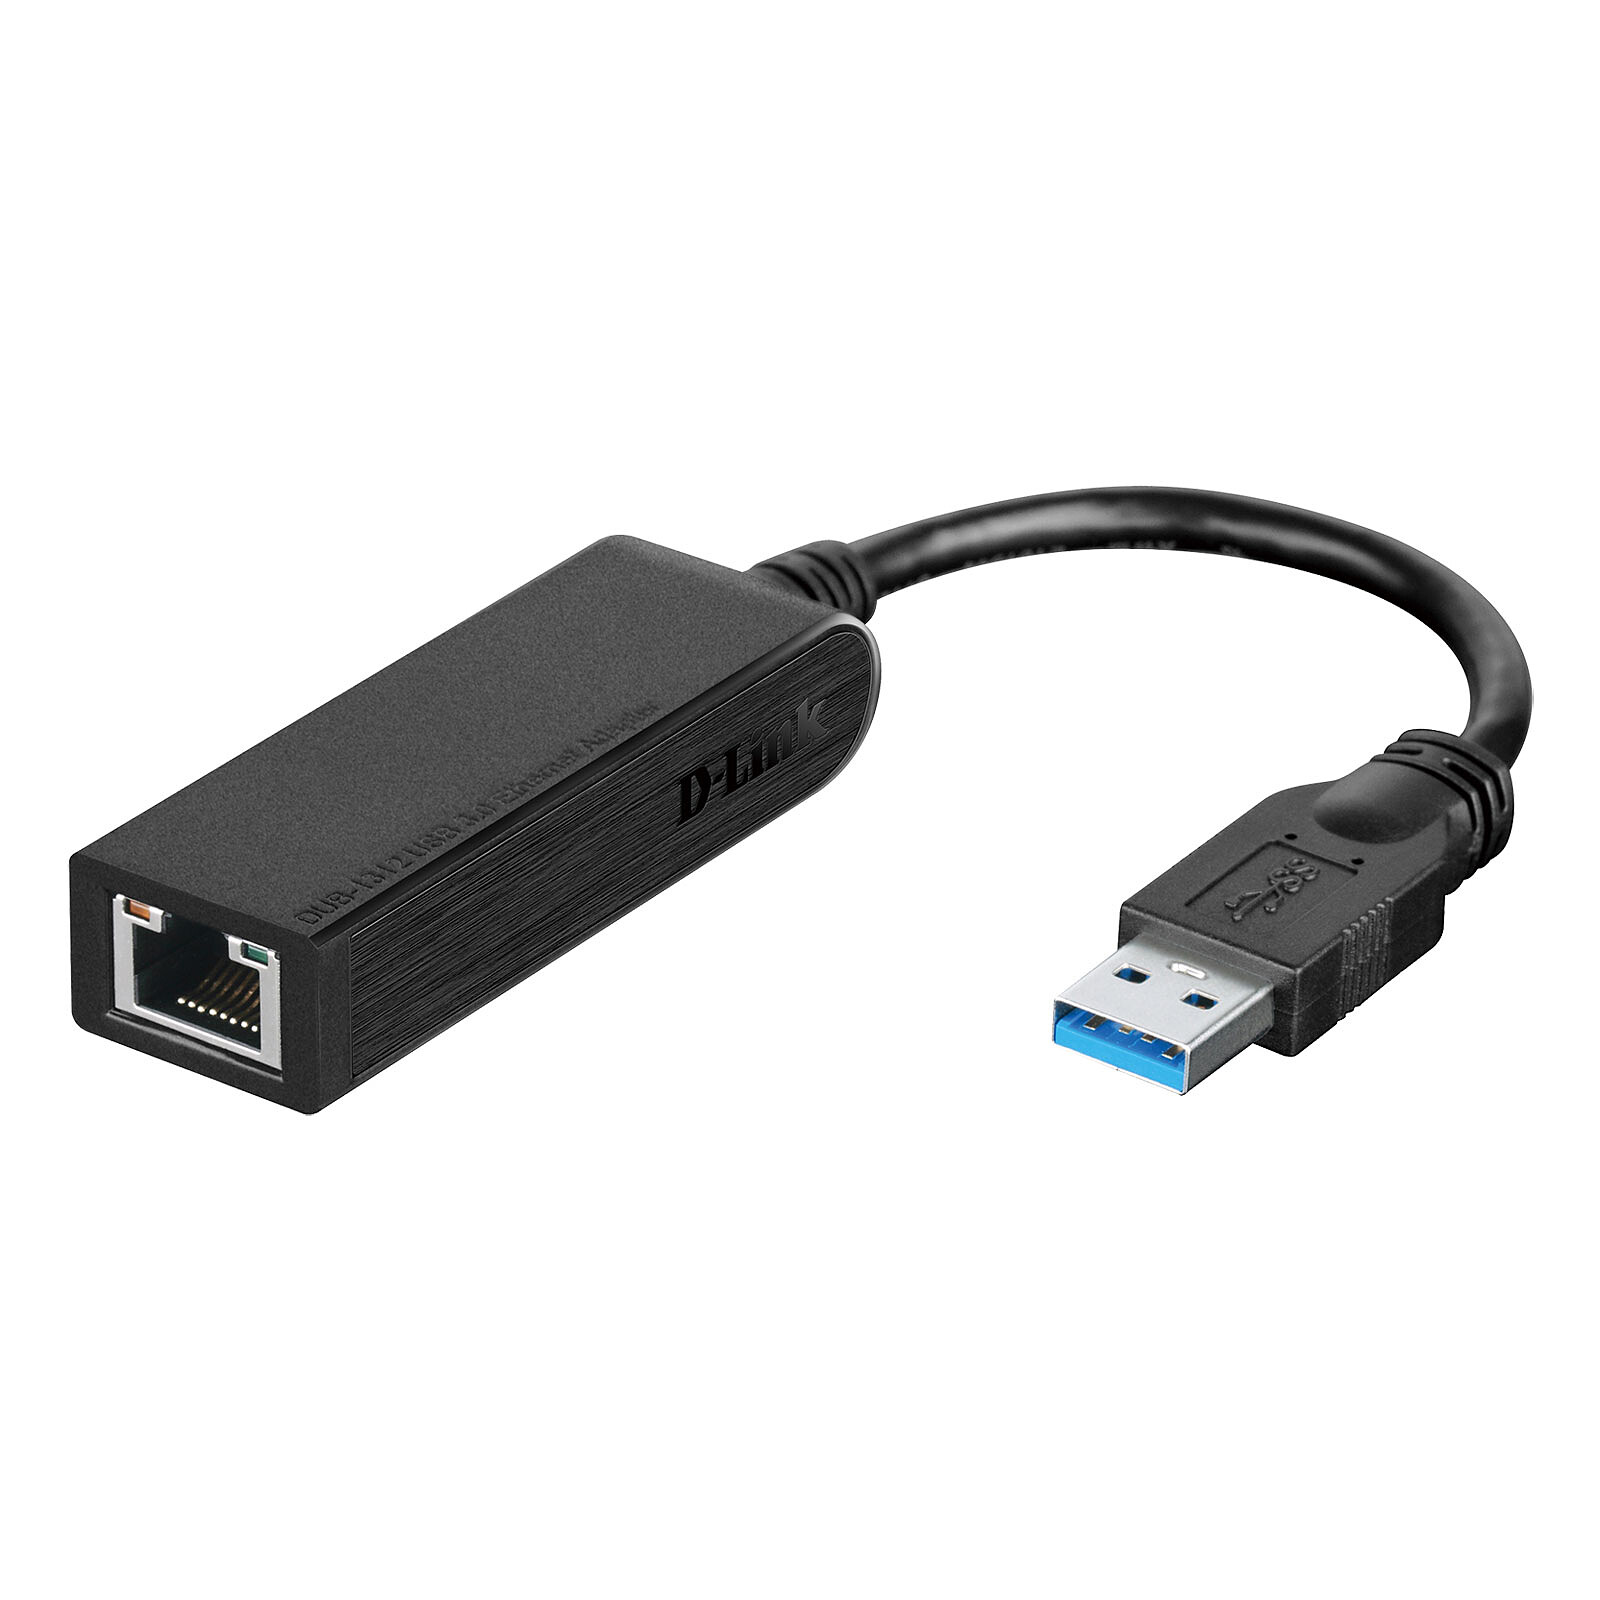 StarTech.com Adaptateur réseau Gigabit Ethernet 10/100/1000 Mbps (USB 3.0)  - Carte réseau - Garantie 3 ans LDLC